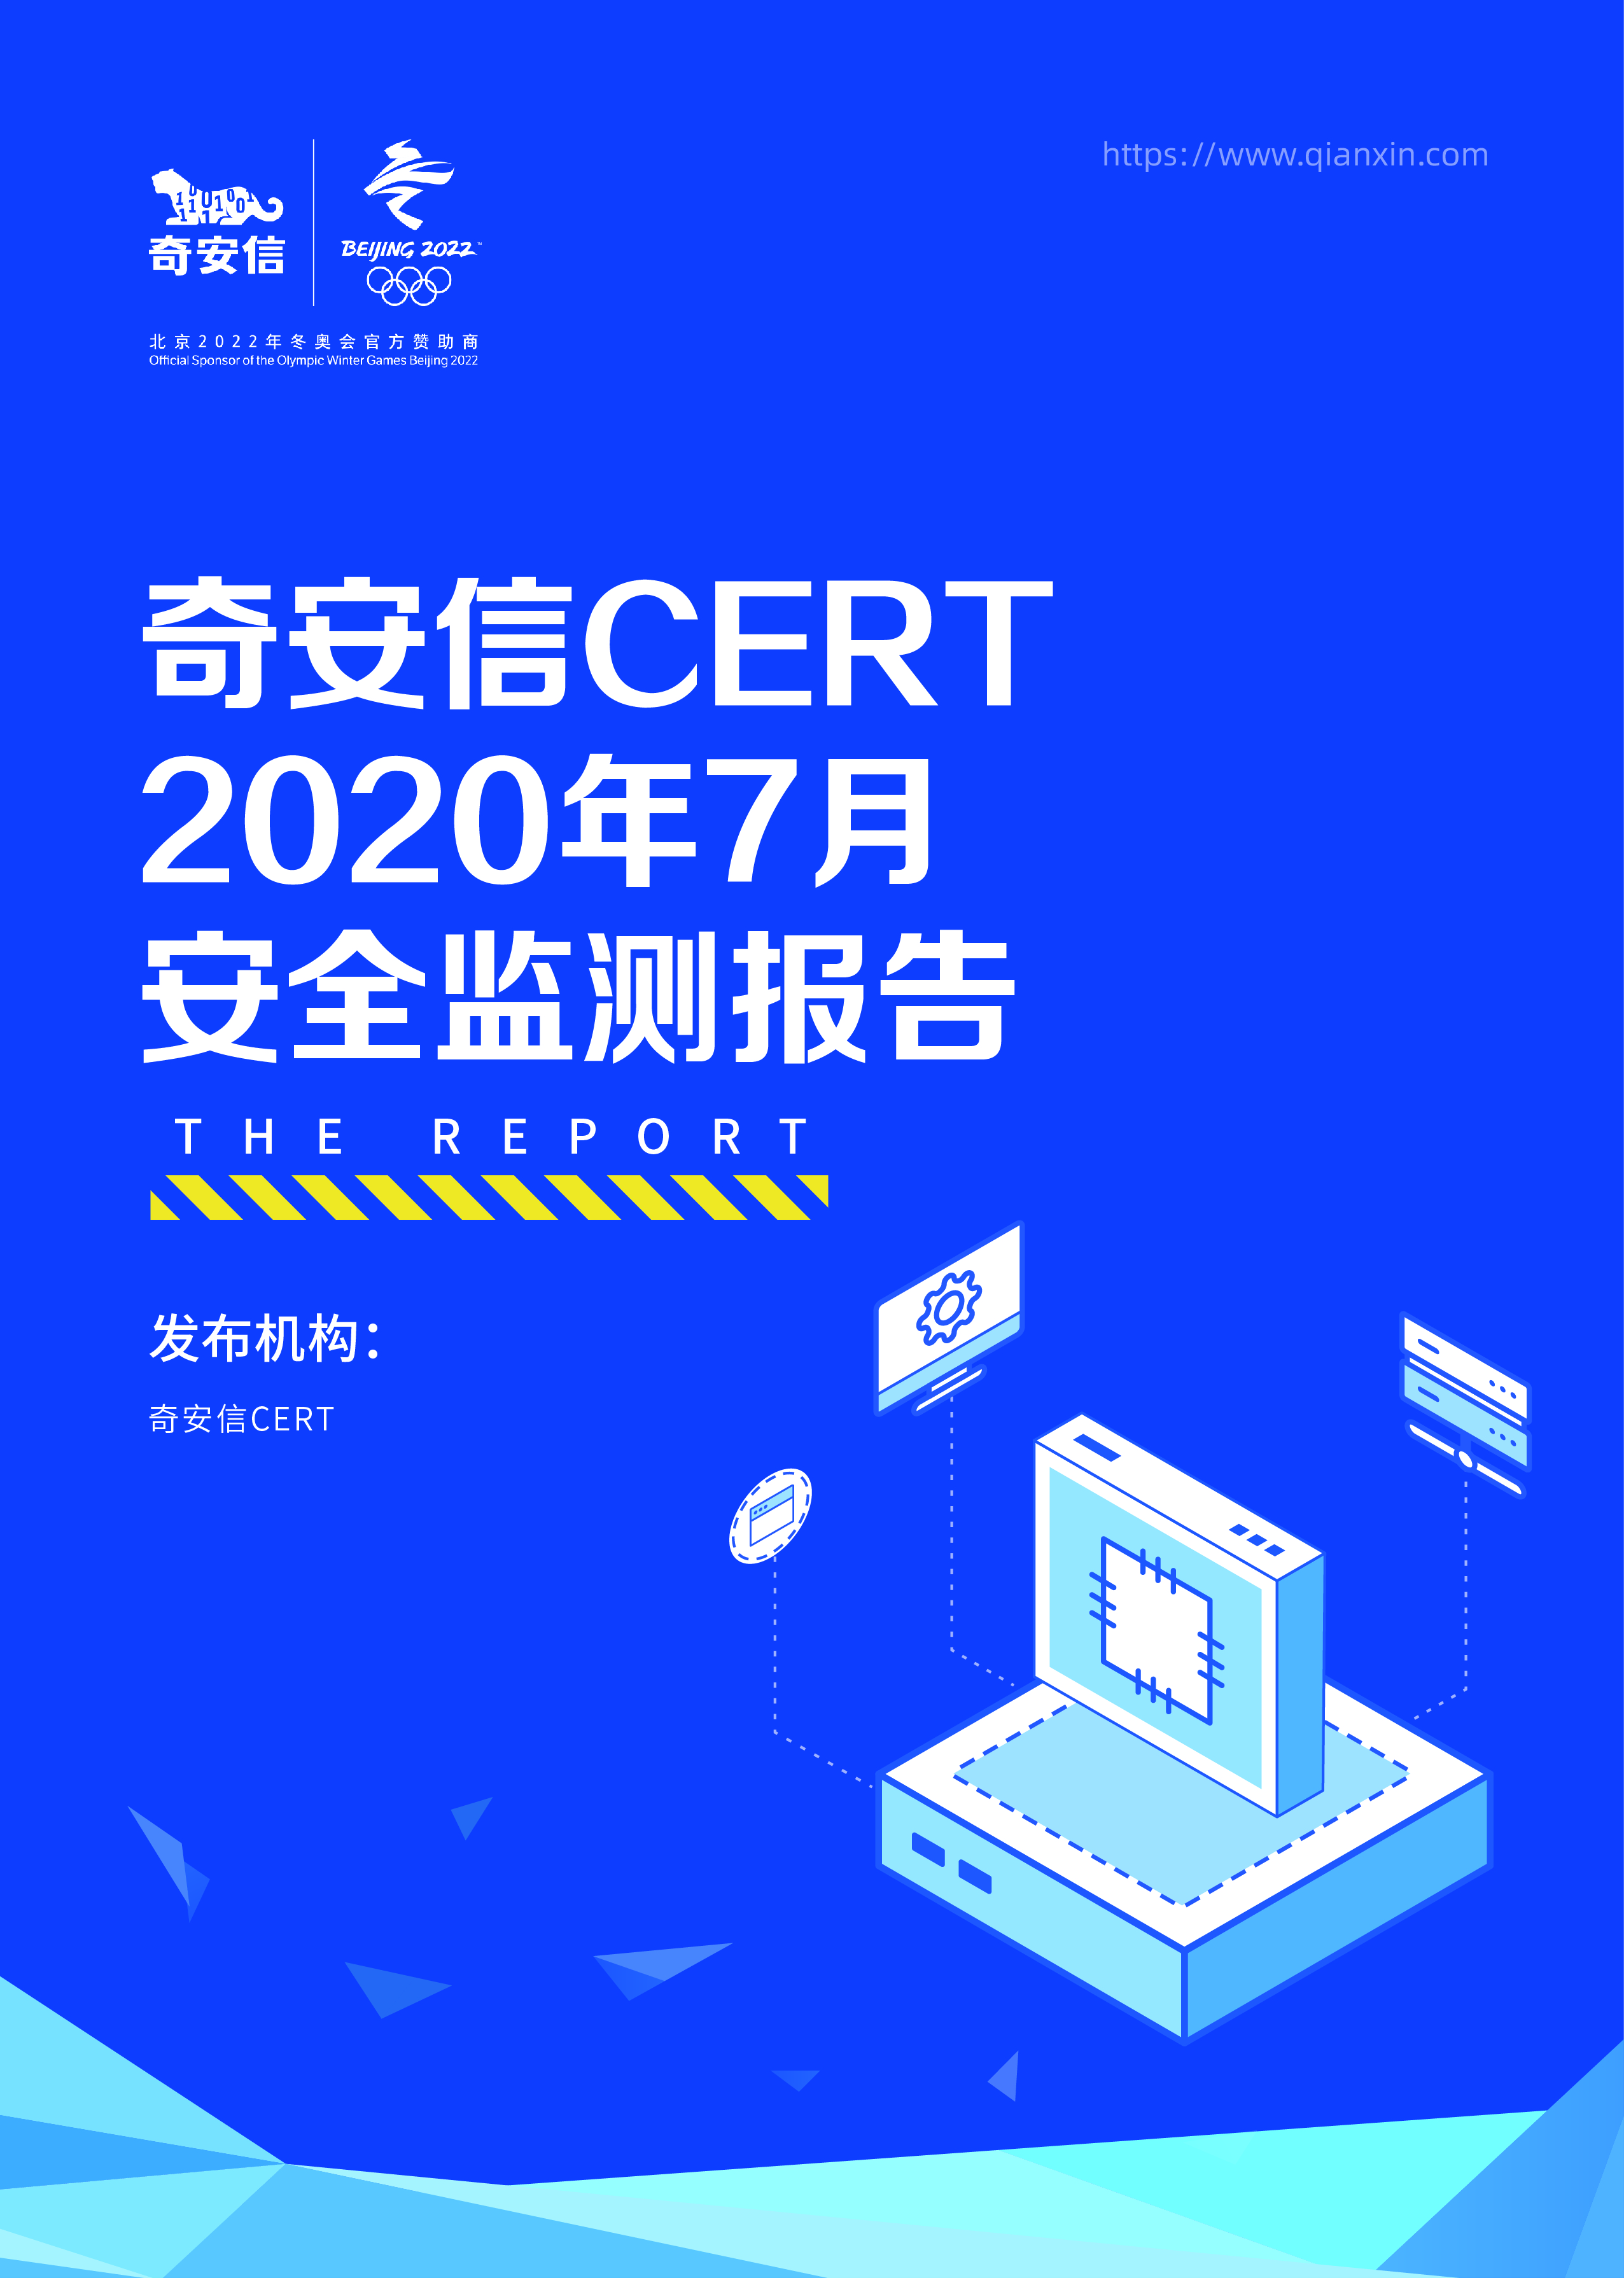 奇安信 CERT 2020年7月安全监测报告